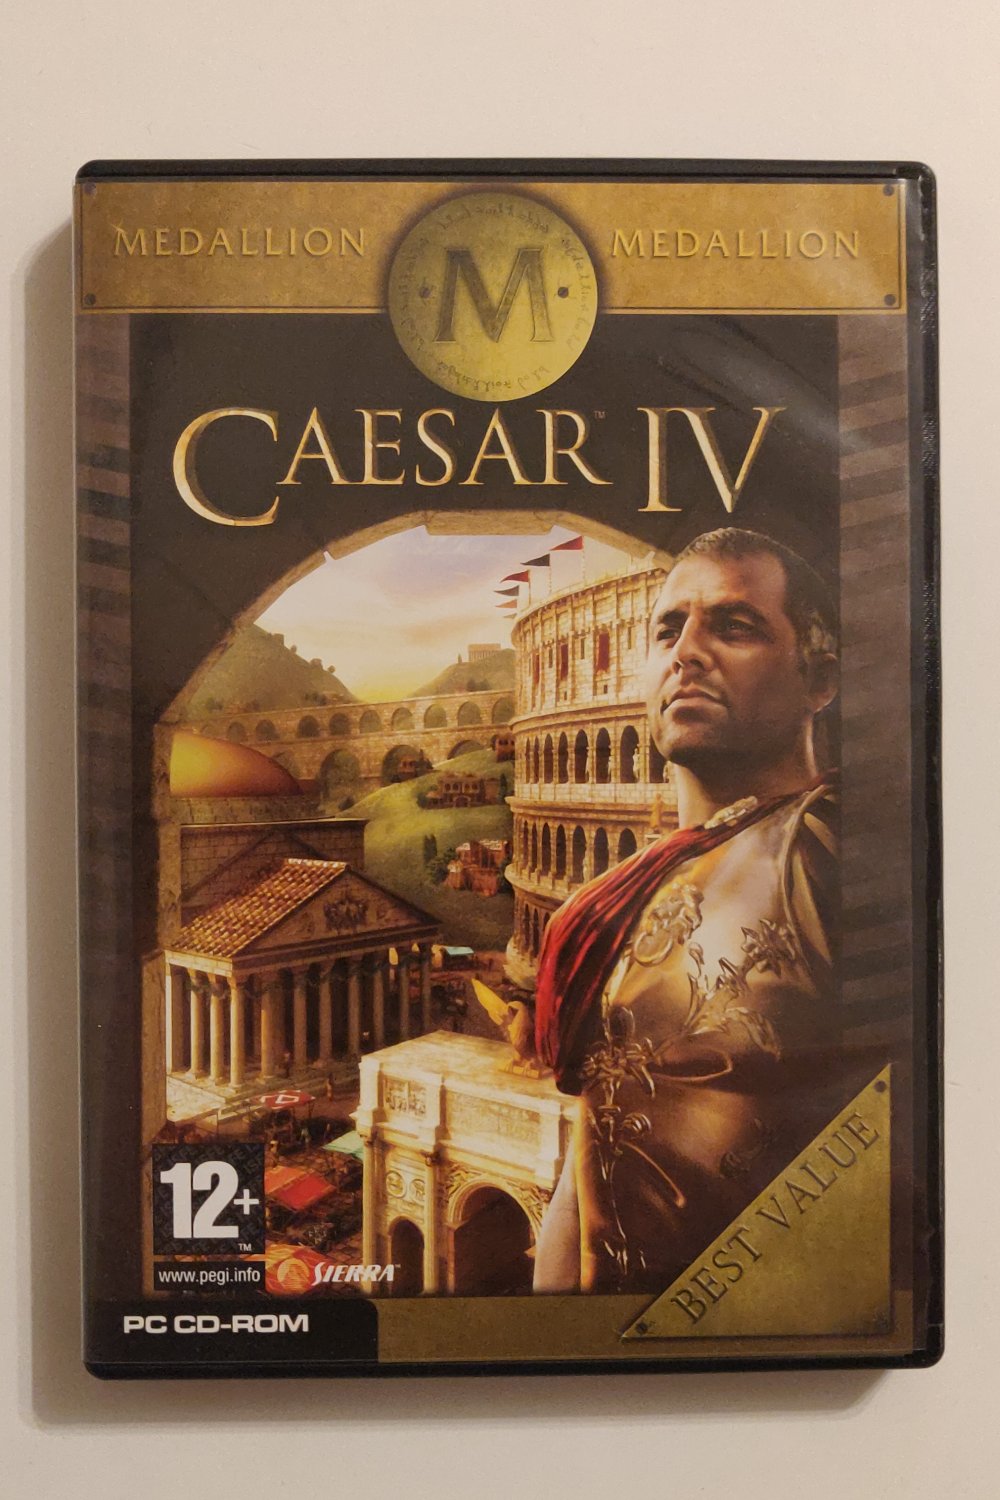 Caesar IV (PC) (CIB) - Picture 1 of 1